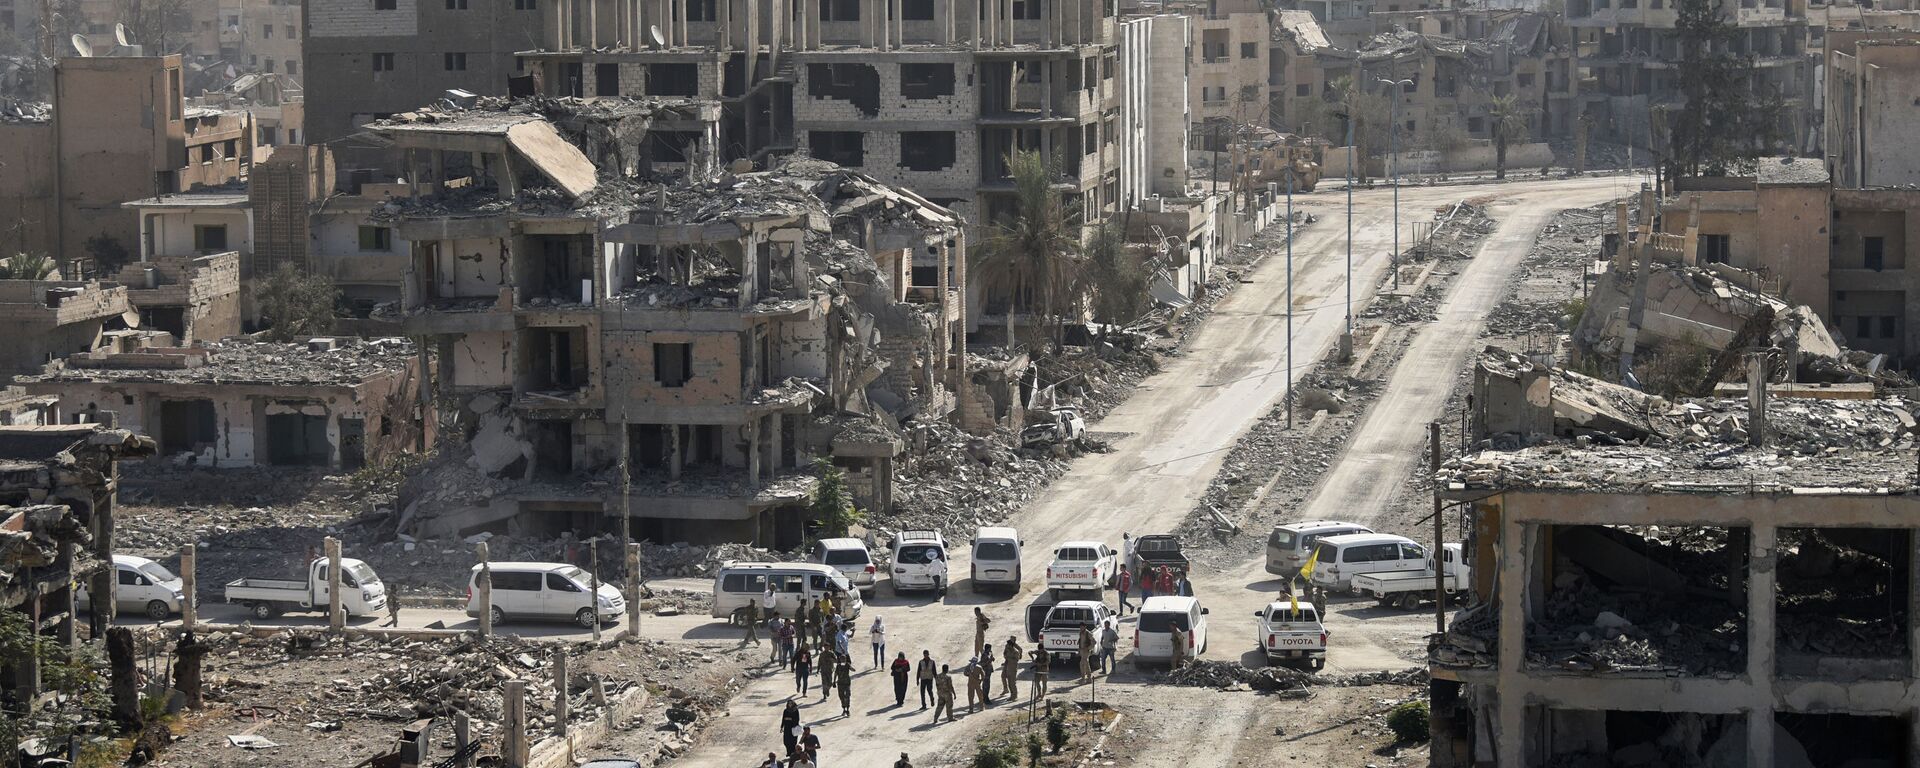 القوات الديموقراطية السورية في مدينة الرقة بعد تحريرها، سوريا 20 أكتوبر/ تشرين الأول 2017 - سبوتنيك عربي, 1920, 17.08.2022